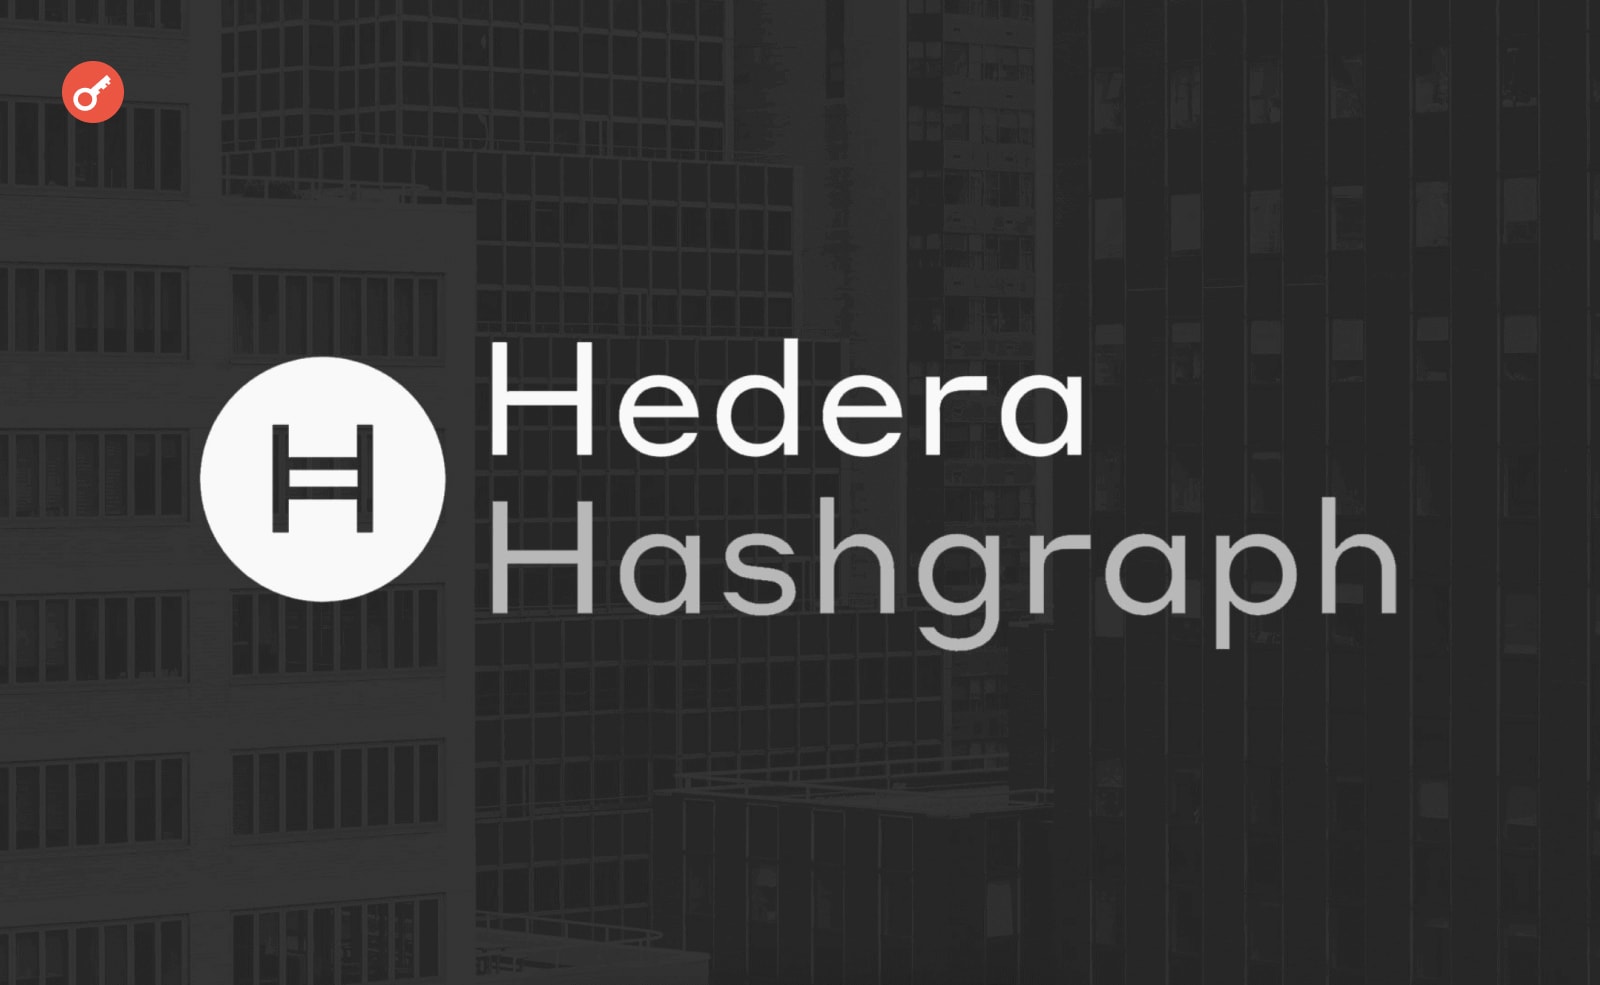 У Hedera заблокували доступ до гаманця і фірмового додатка. Головний колаж новини.